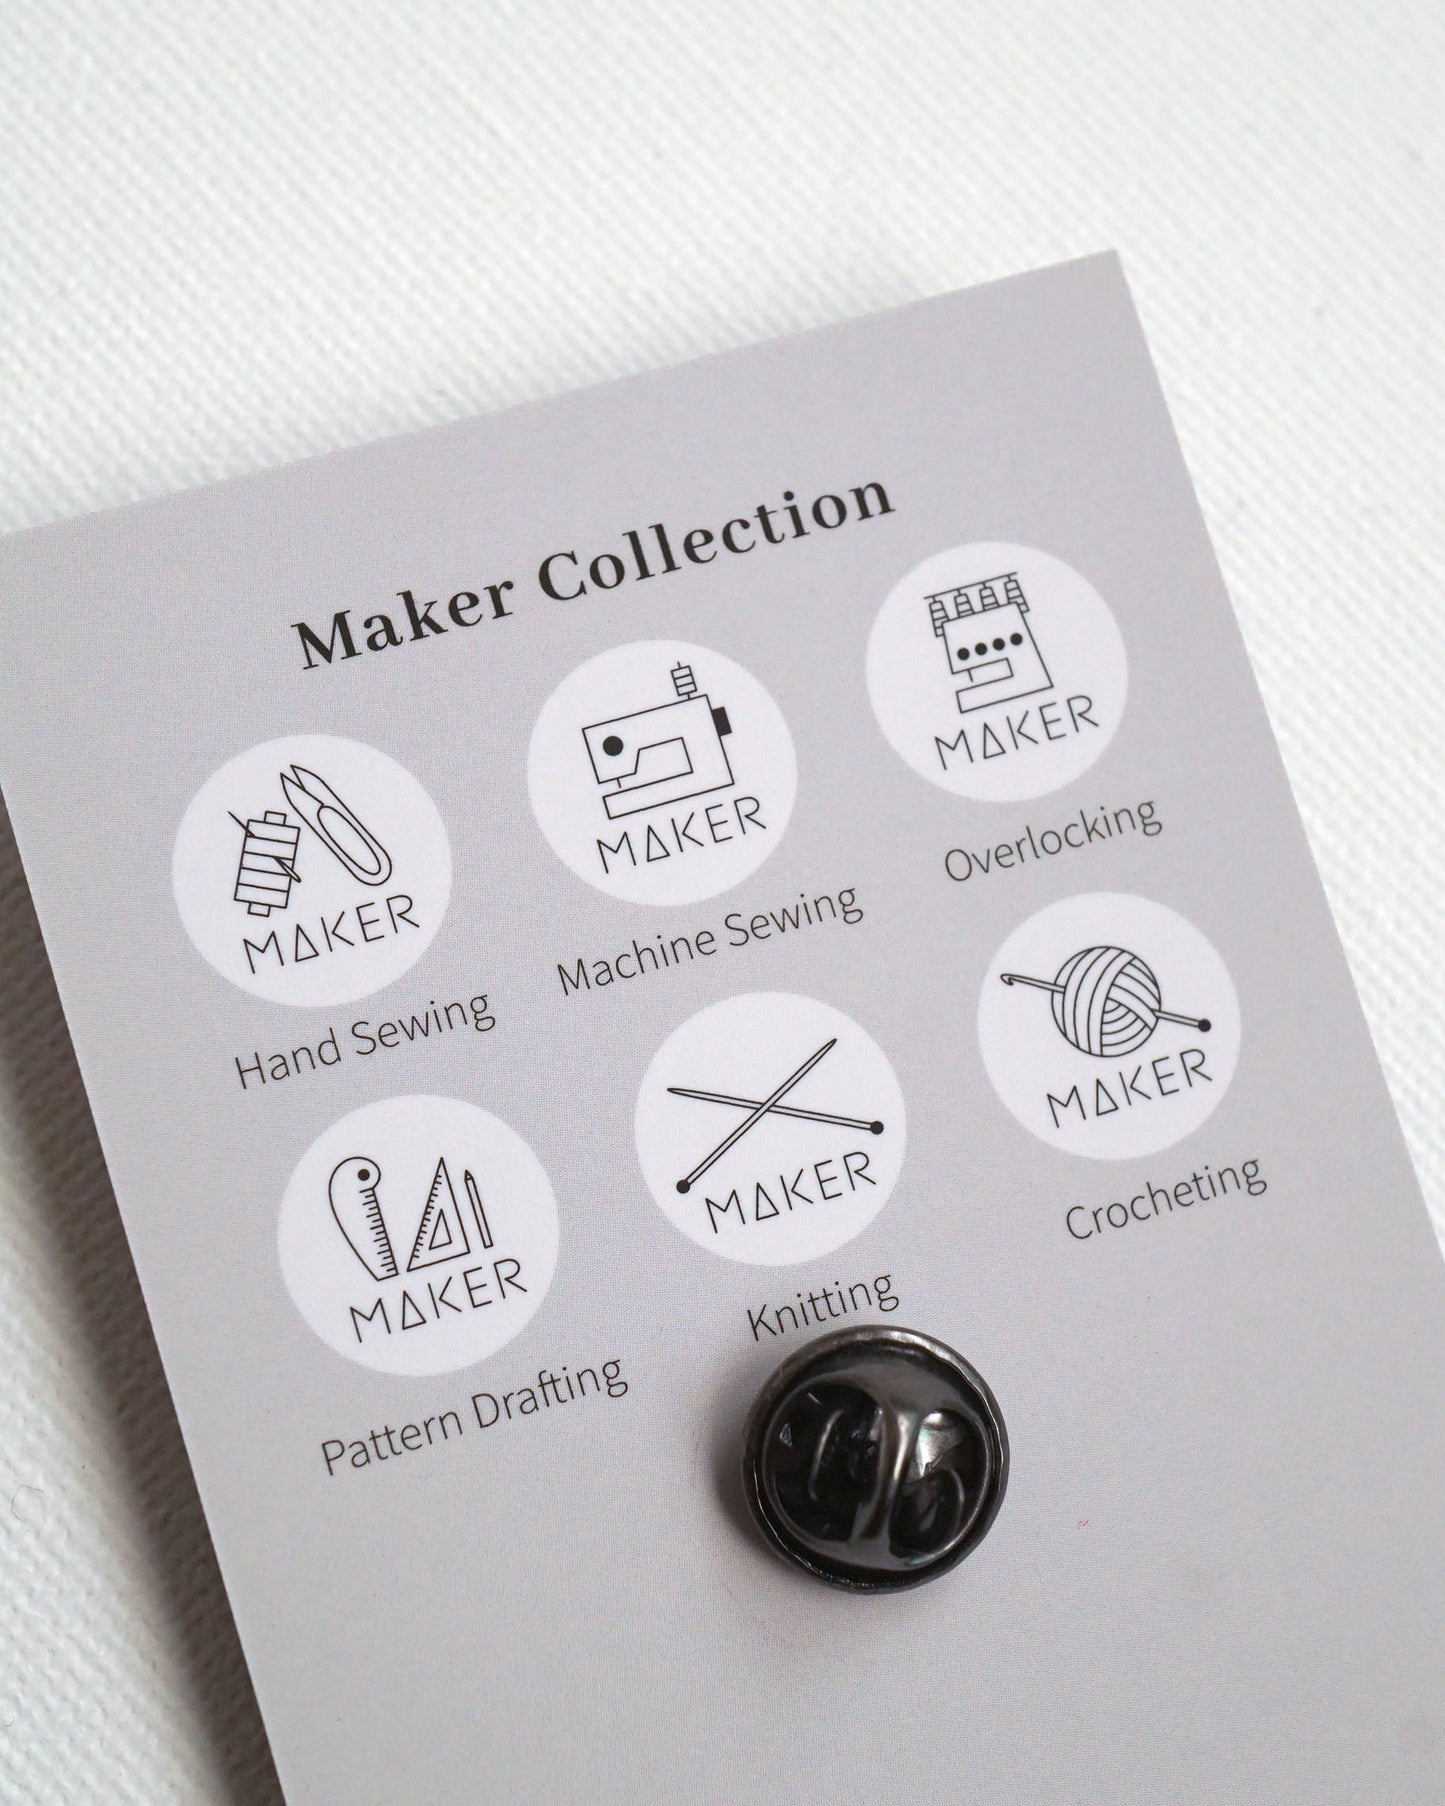 The Maker Badge - Knitting